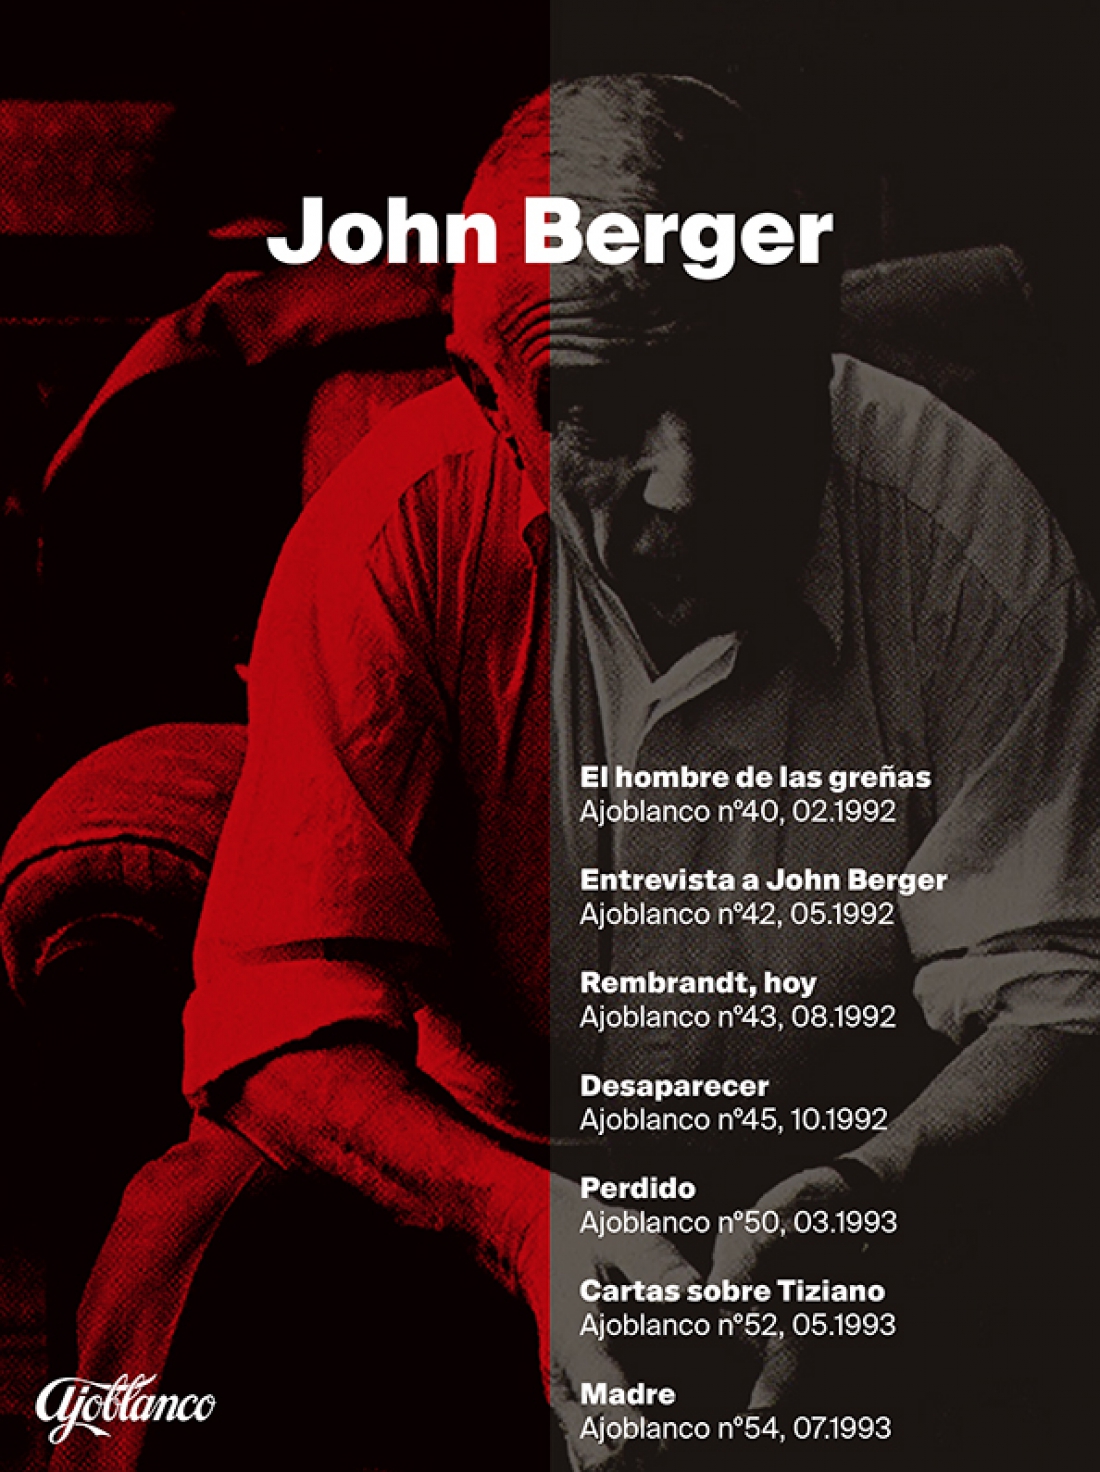 Especial John Berger en Ajoblanco